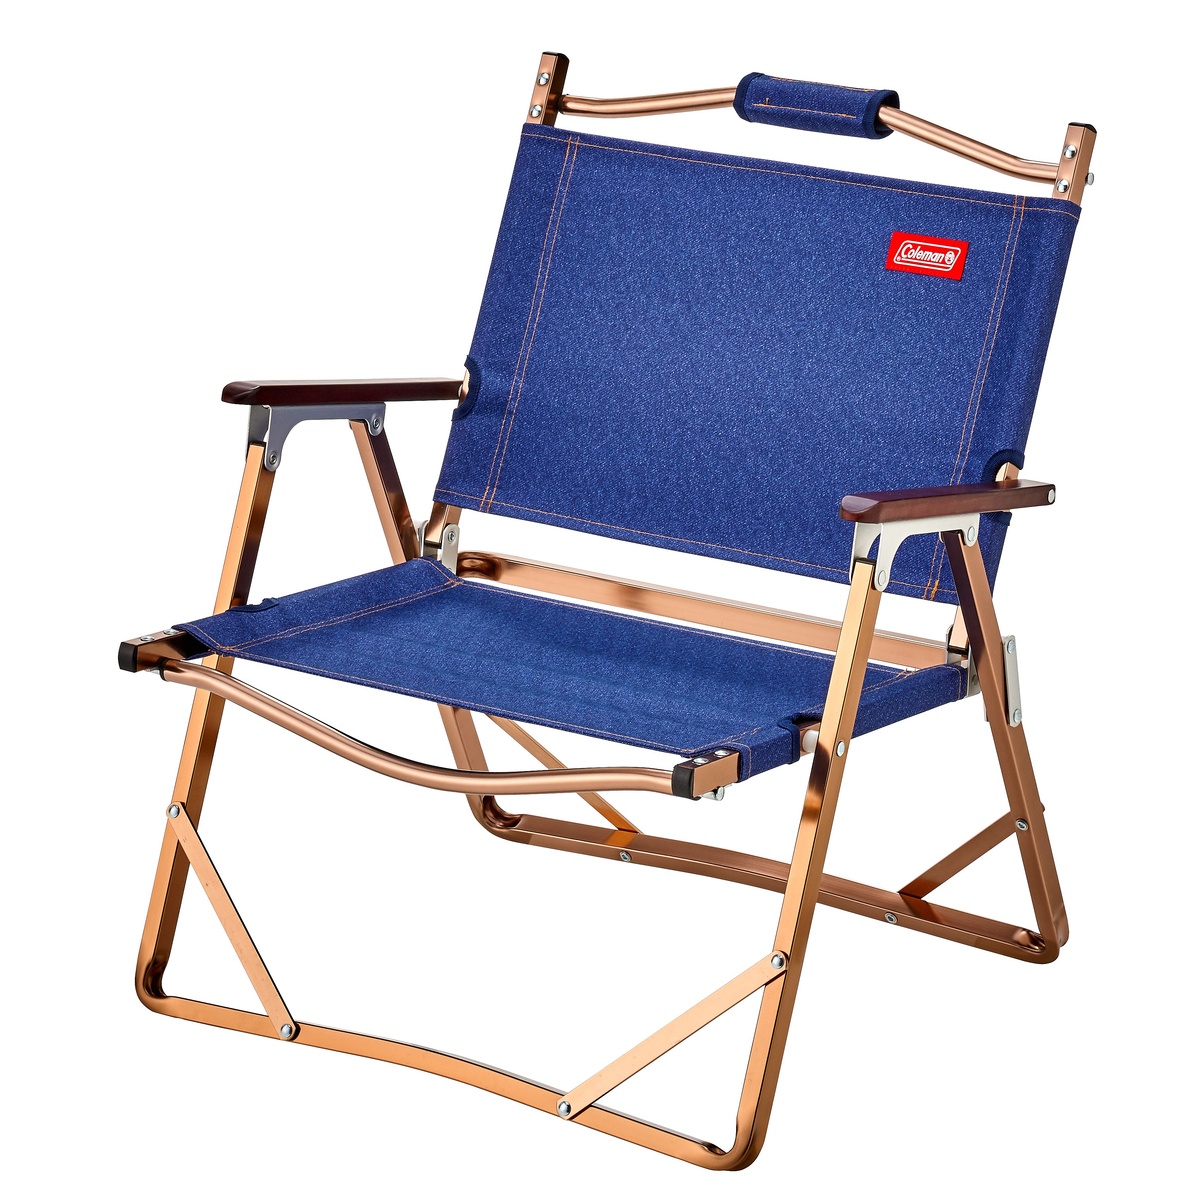 コールマン キャンプ用品 ファミリーチェア 椅子 コンパクトフォールディングチェア 在庫一掃売り切りセール 2000036517 73%OFF COLEMAN デニム